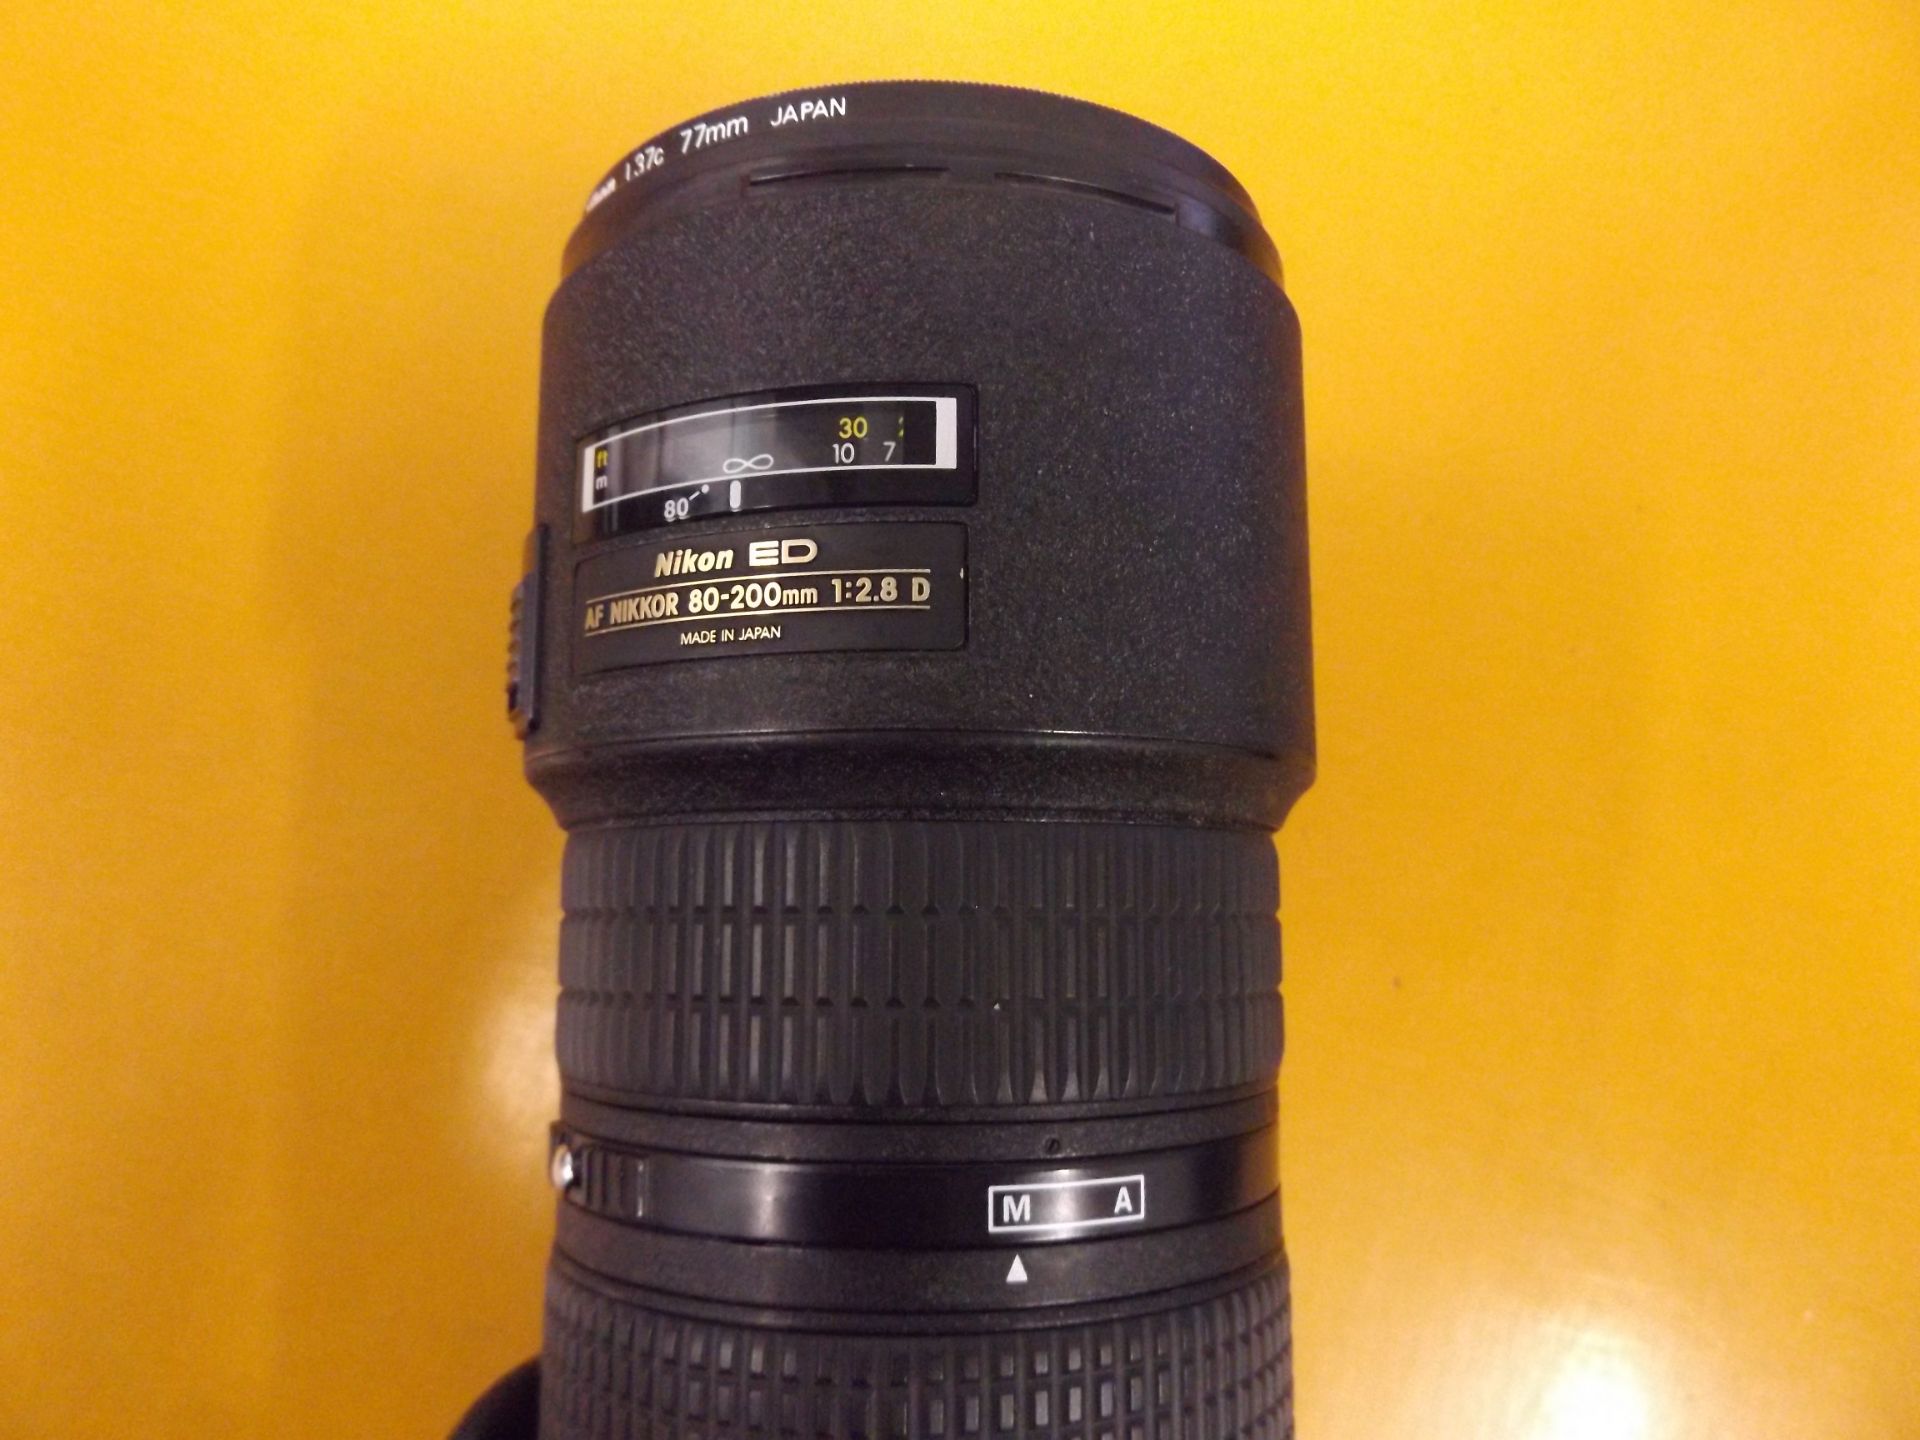 Nikon ED AF Nikkor 80-200mm 1:2.8 D Lense with Leather Case - Image 8 of 10